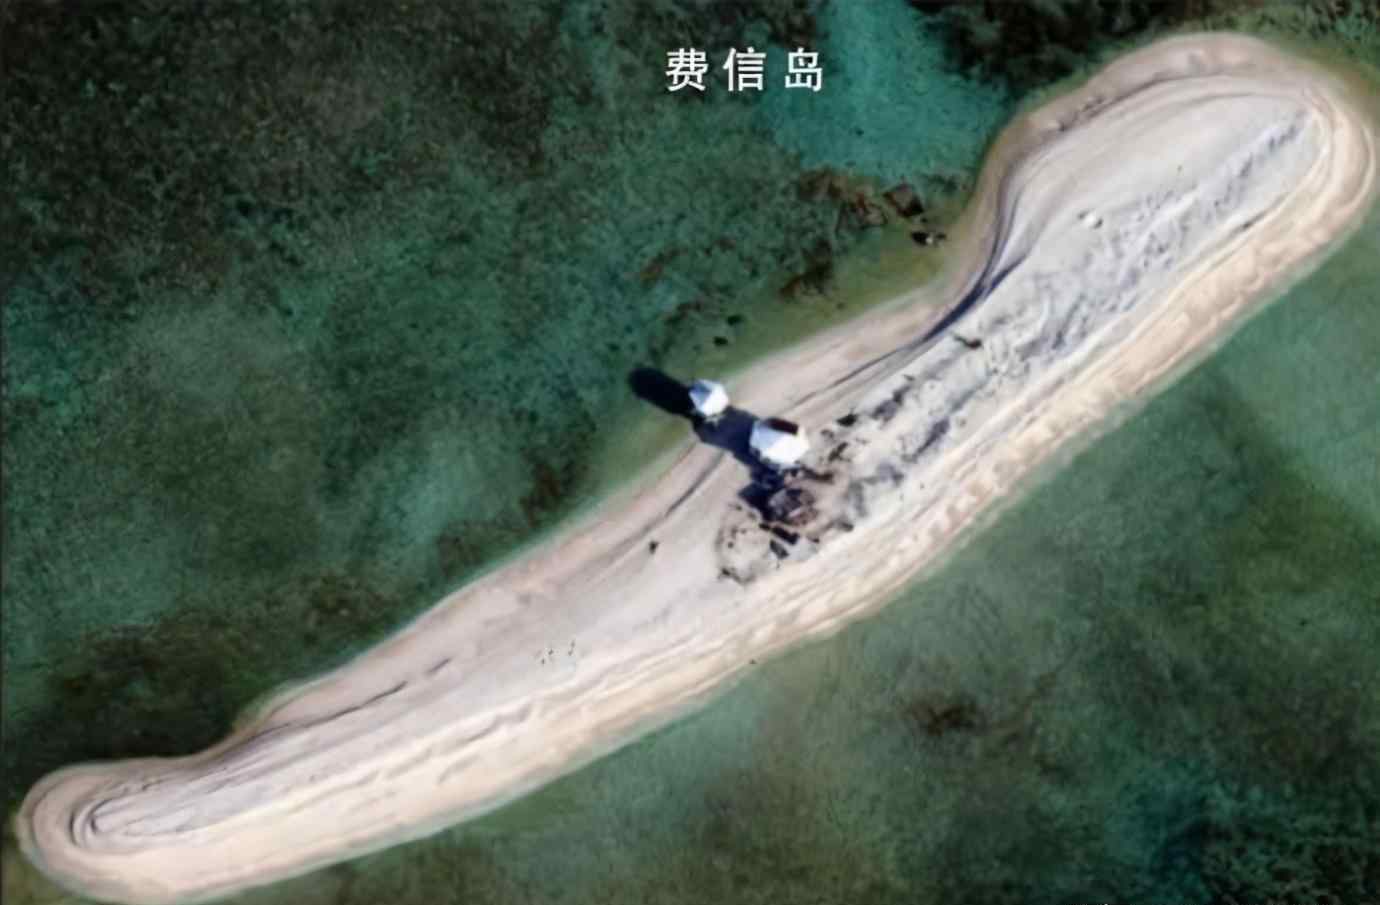 南海岛屿实际控制图 中国实际控制南海多少岛礁？这个数字很有参考价值